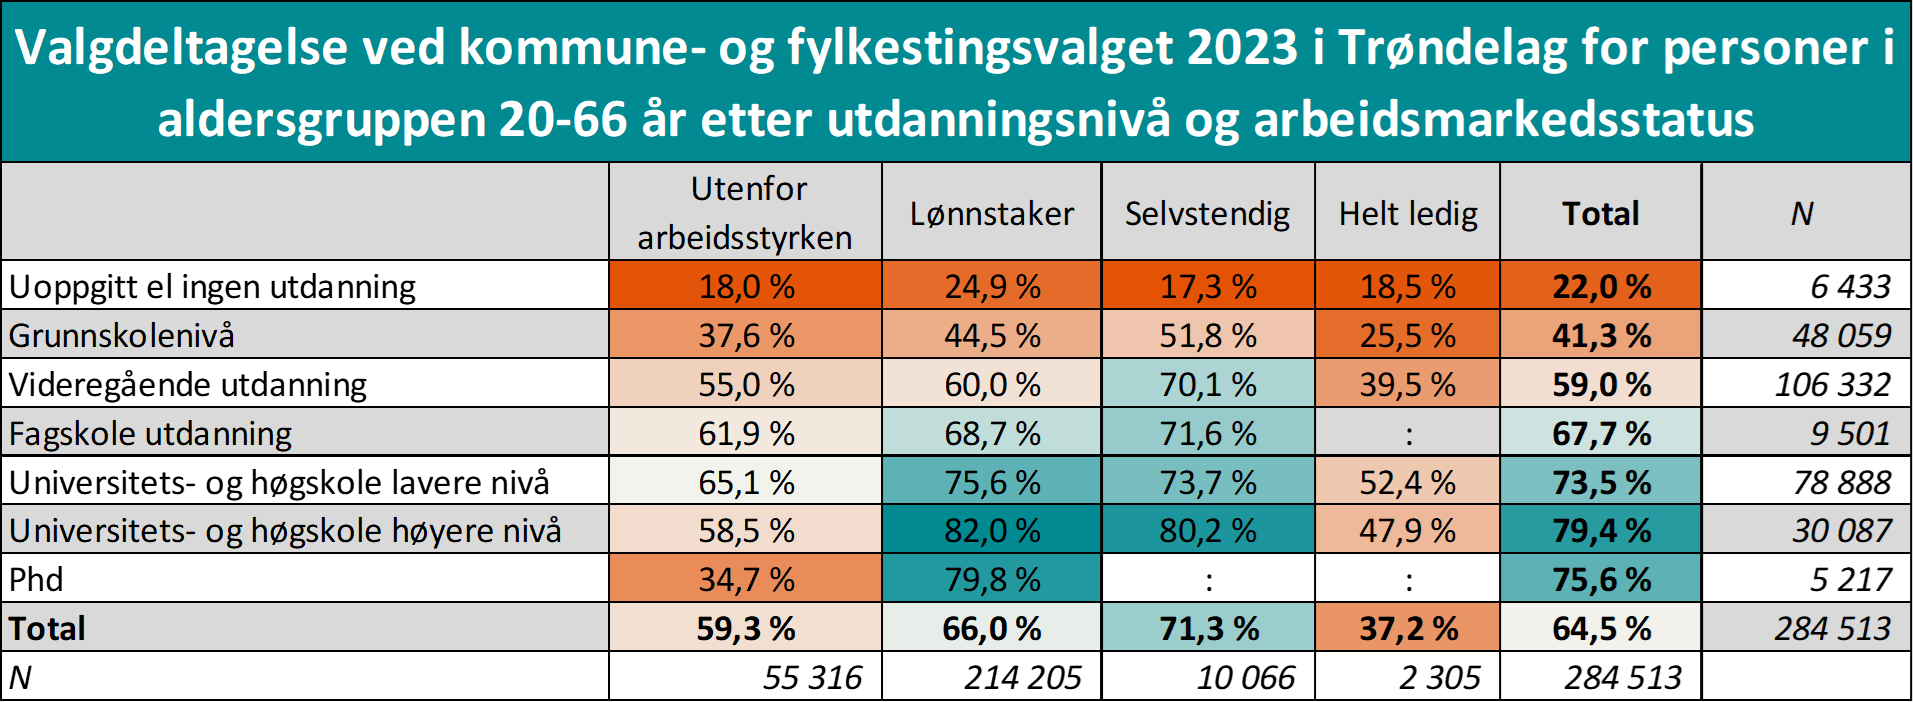 Valgdeltagelse ved kommune- og fylkestingsvalget 2023 i Trøndelag for personer i aldersgruppen 20-66 år etter utdanningsnivå og arbeidsmarkedsstatus